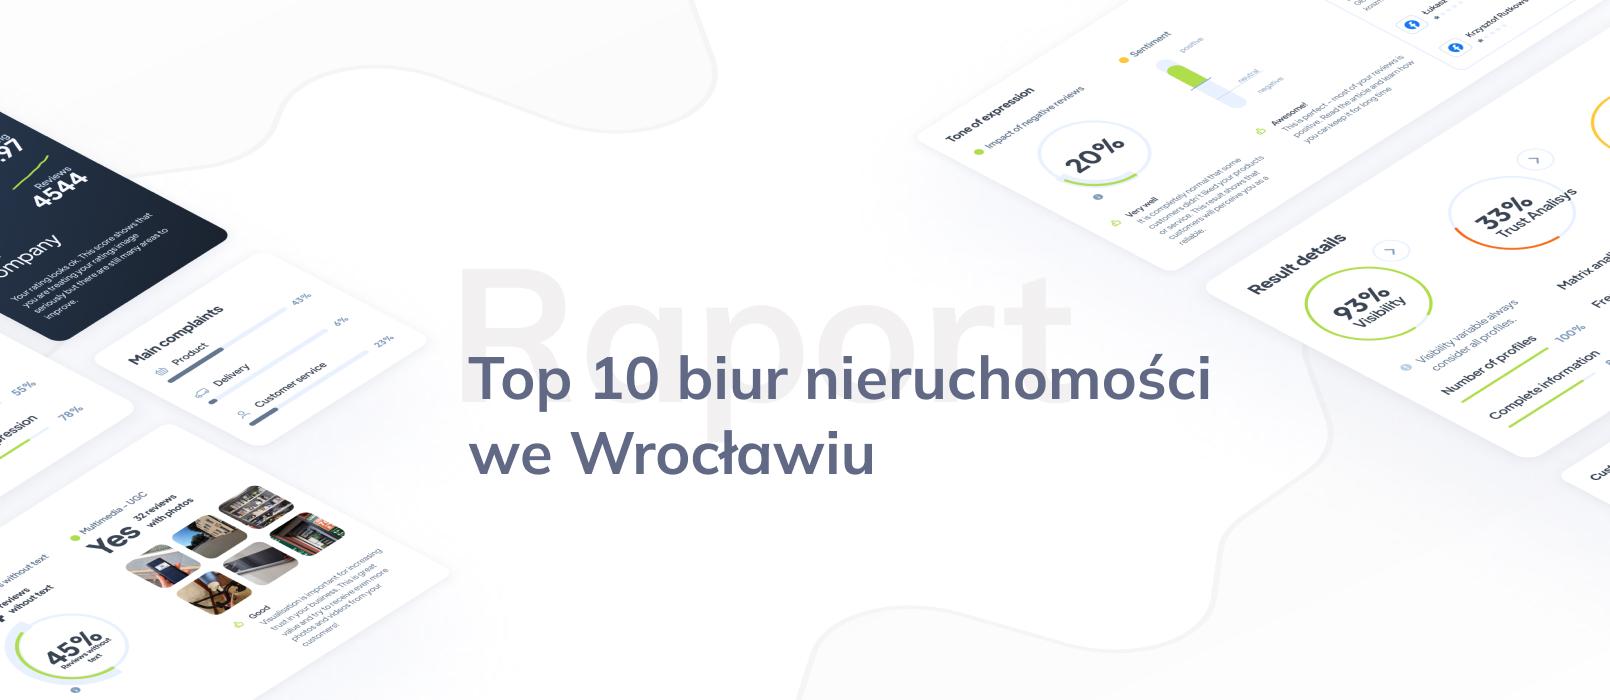 Ranking biur nieruchomości we Wrocławiu